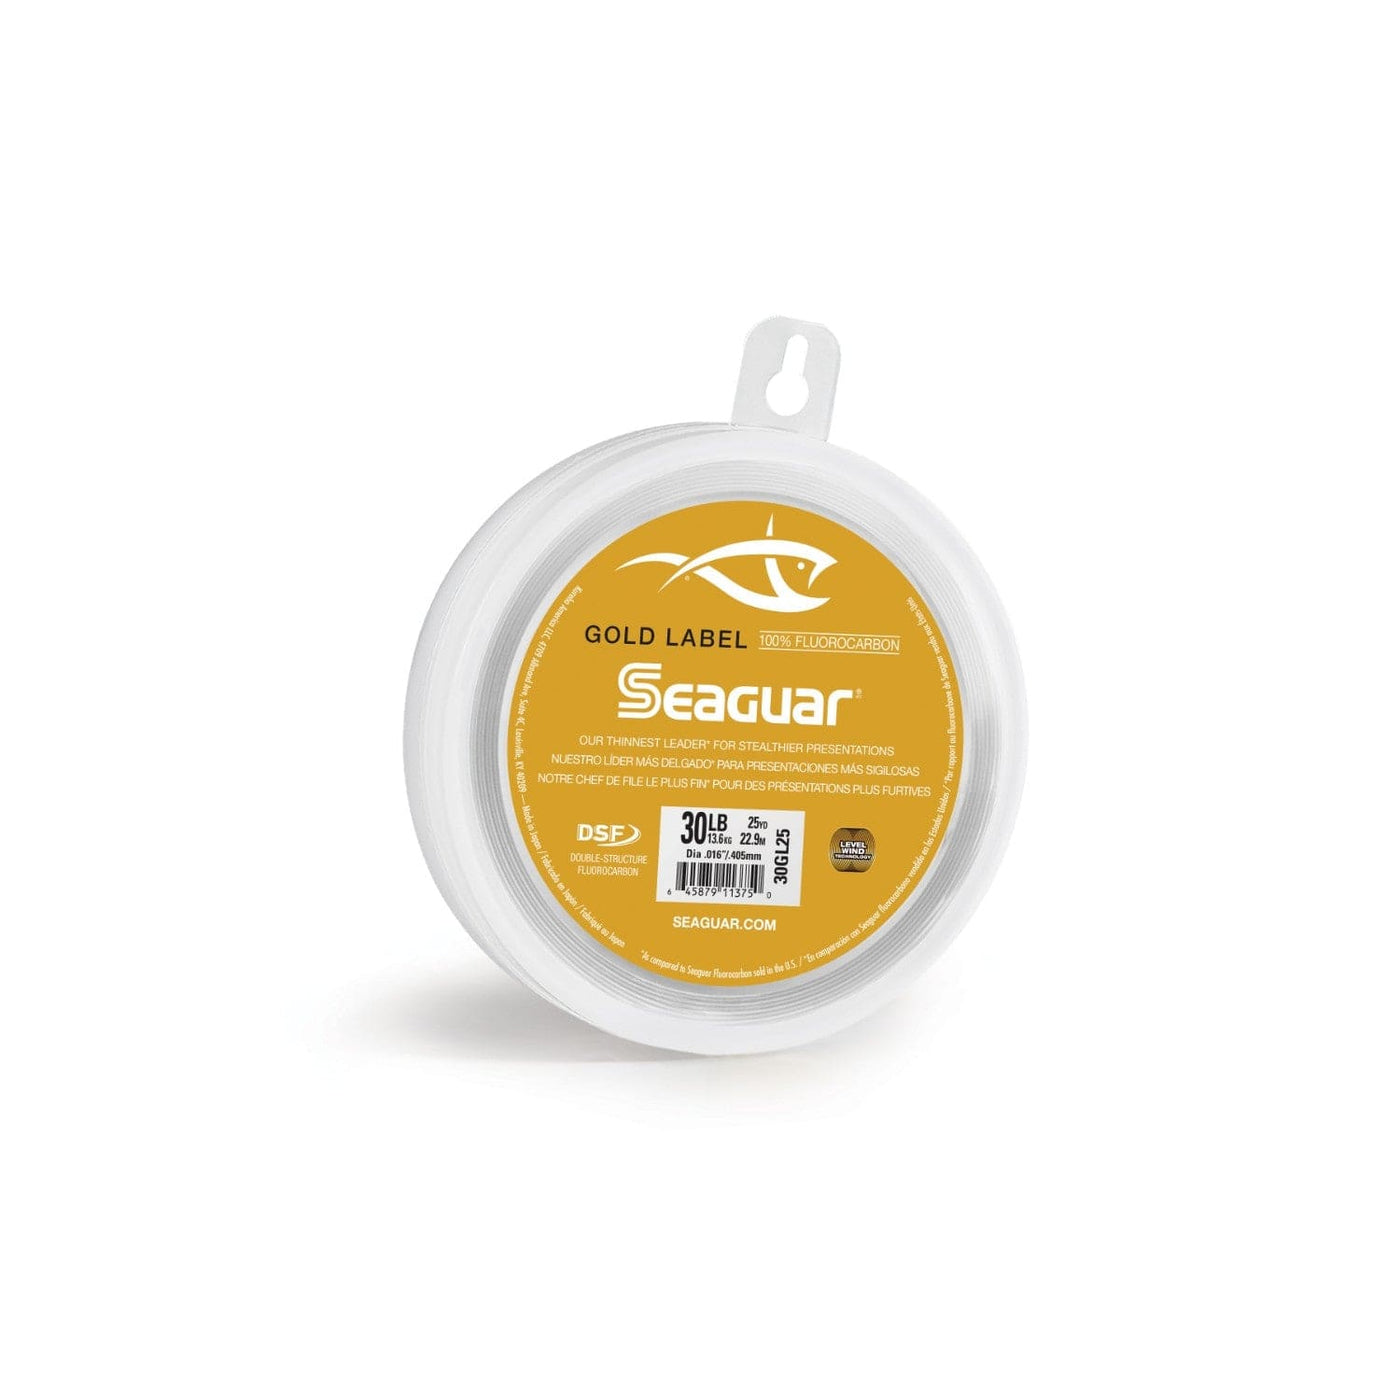 Seaguar Seaguar Gold Label 25 25GL25 Flourocarbon Leader Fishing